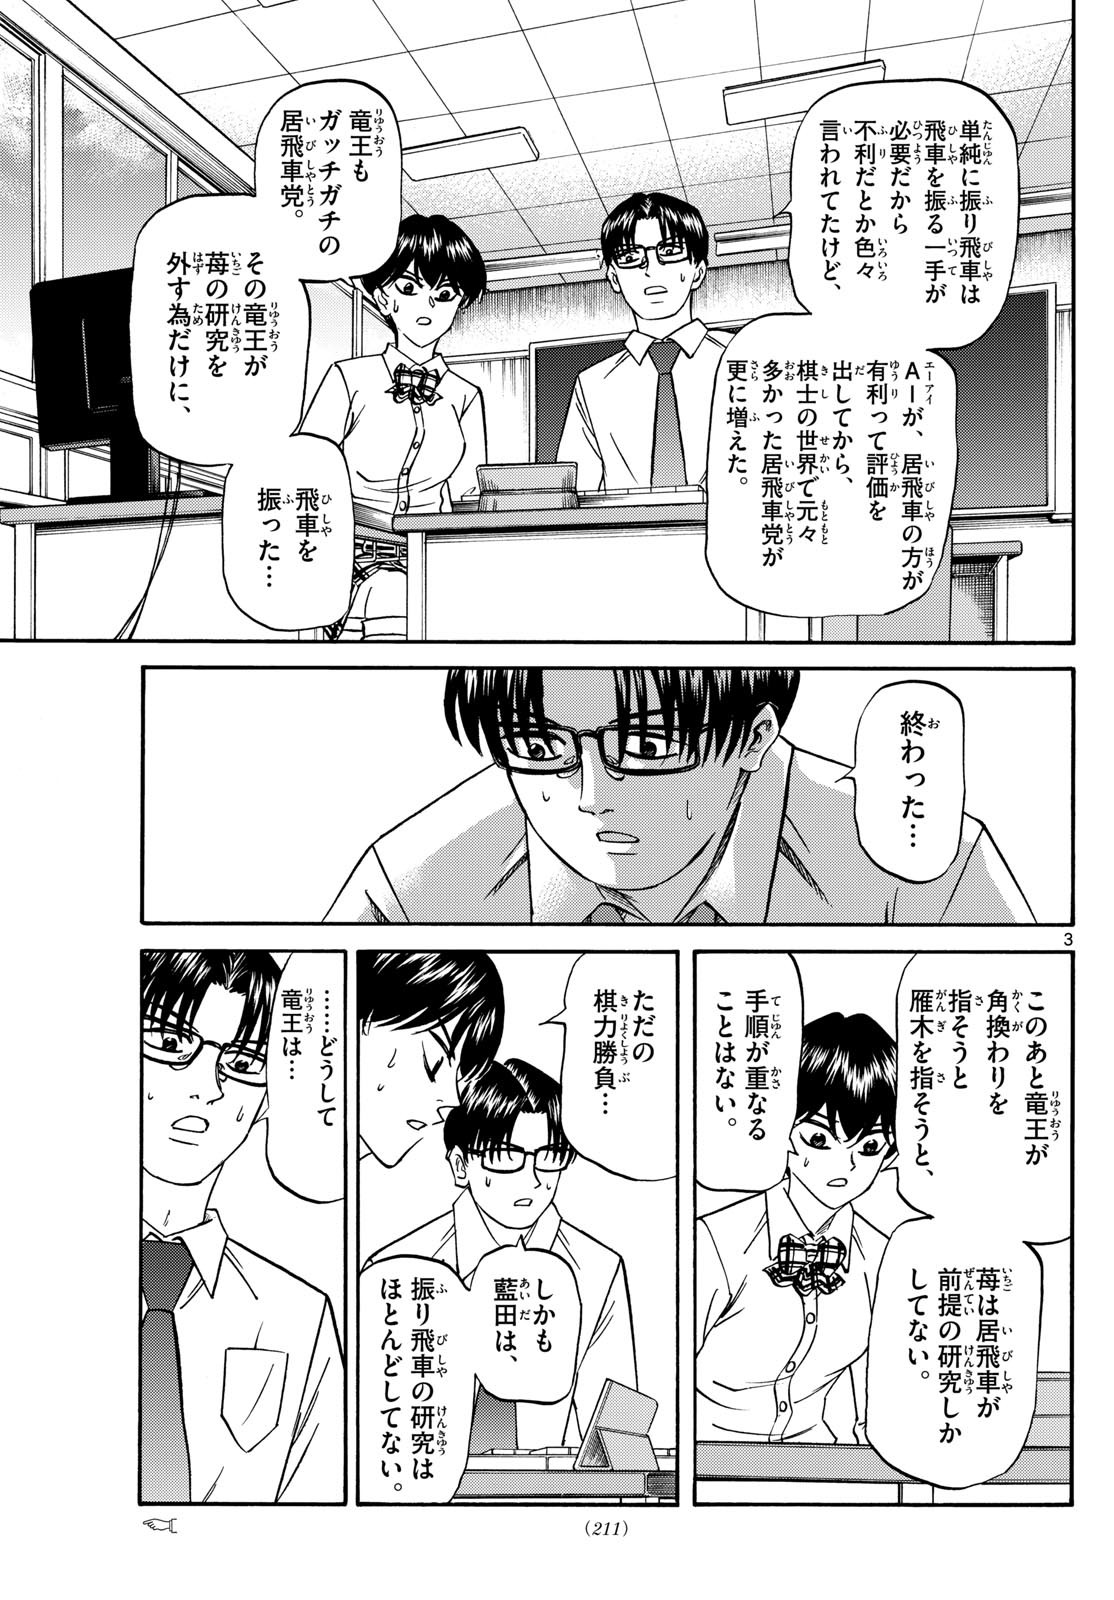 Ryu-to-Ichigo - Chapter 162 - Page 3